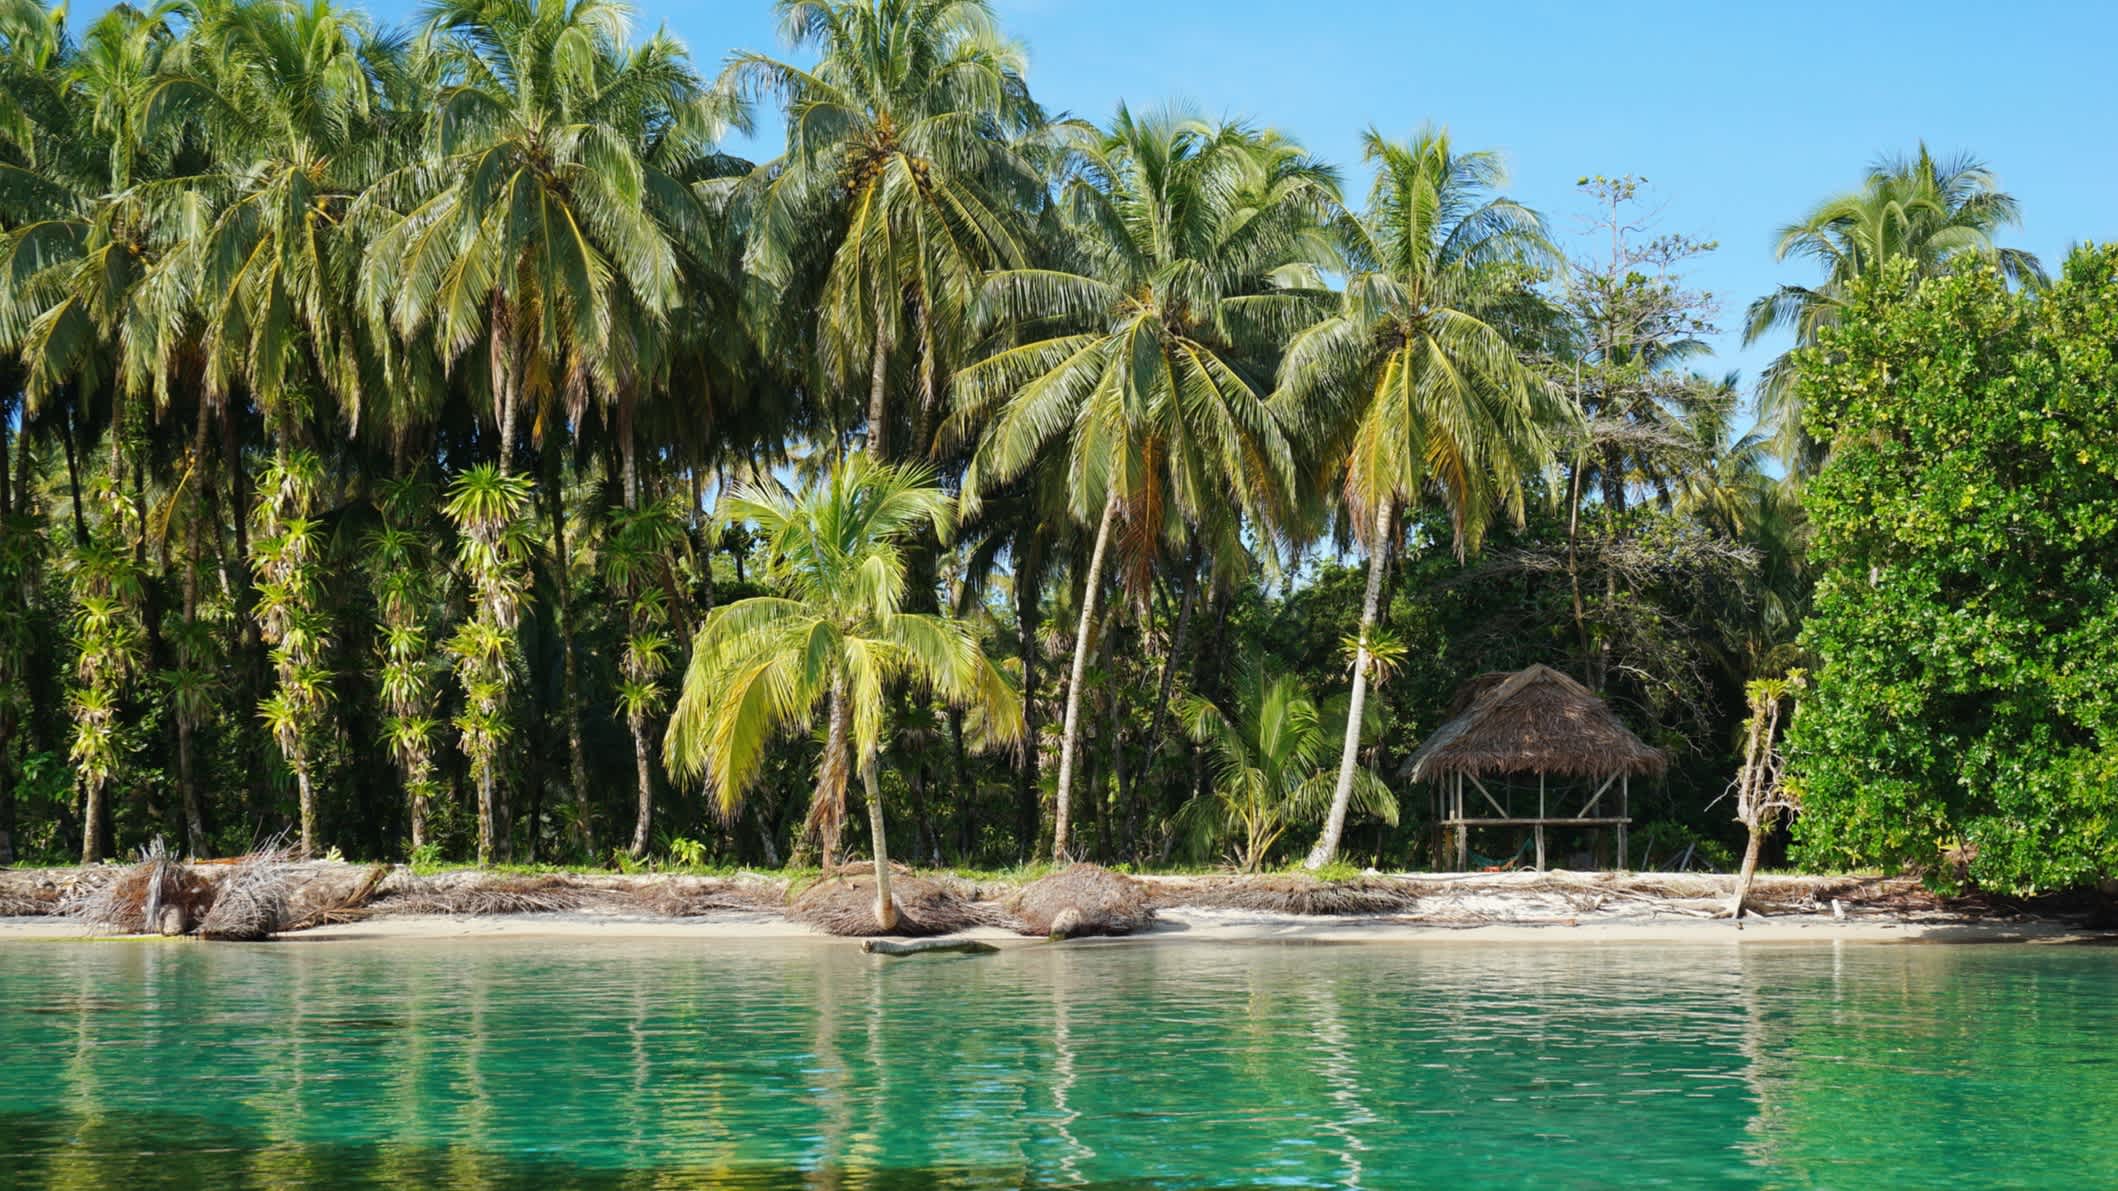 Tropisches Ufer mit üppigen Kokospalmen und einer strohgedeckten Hütte, Karibik, Zapatillas-Inseln, Bocas del Toro, Panama